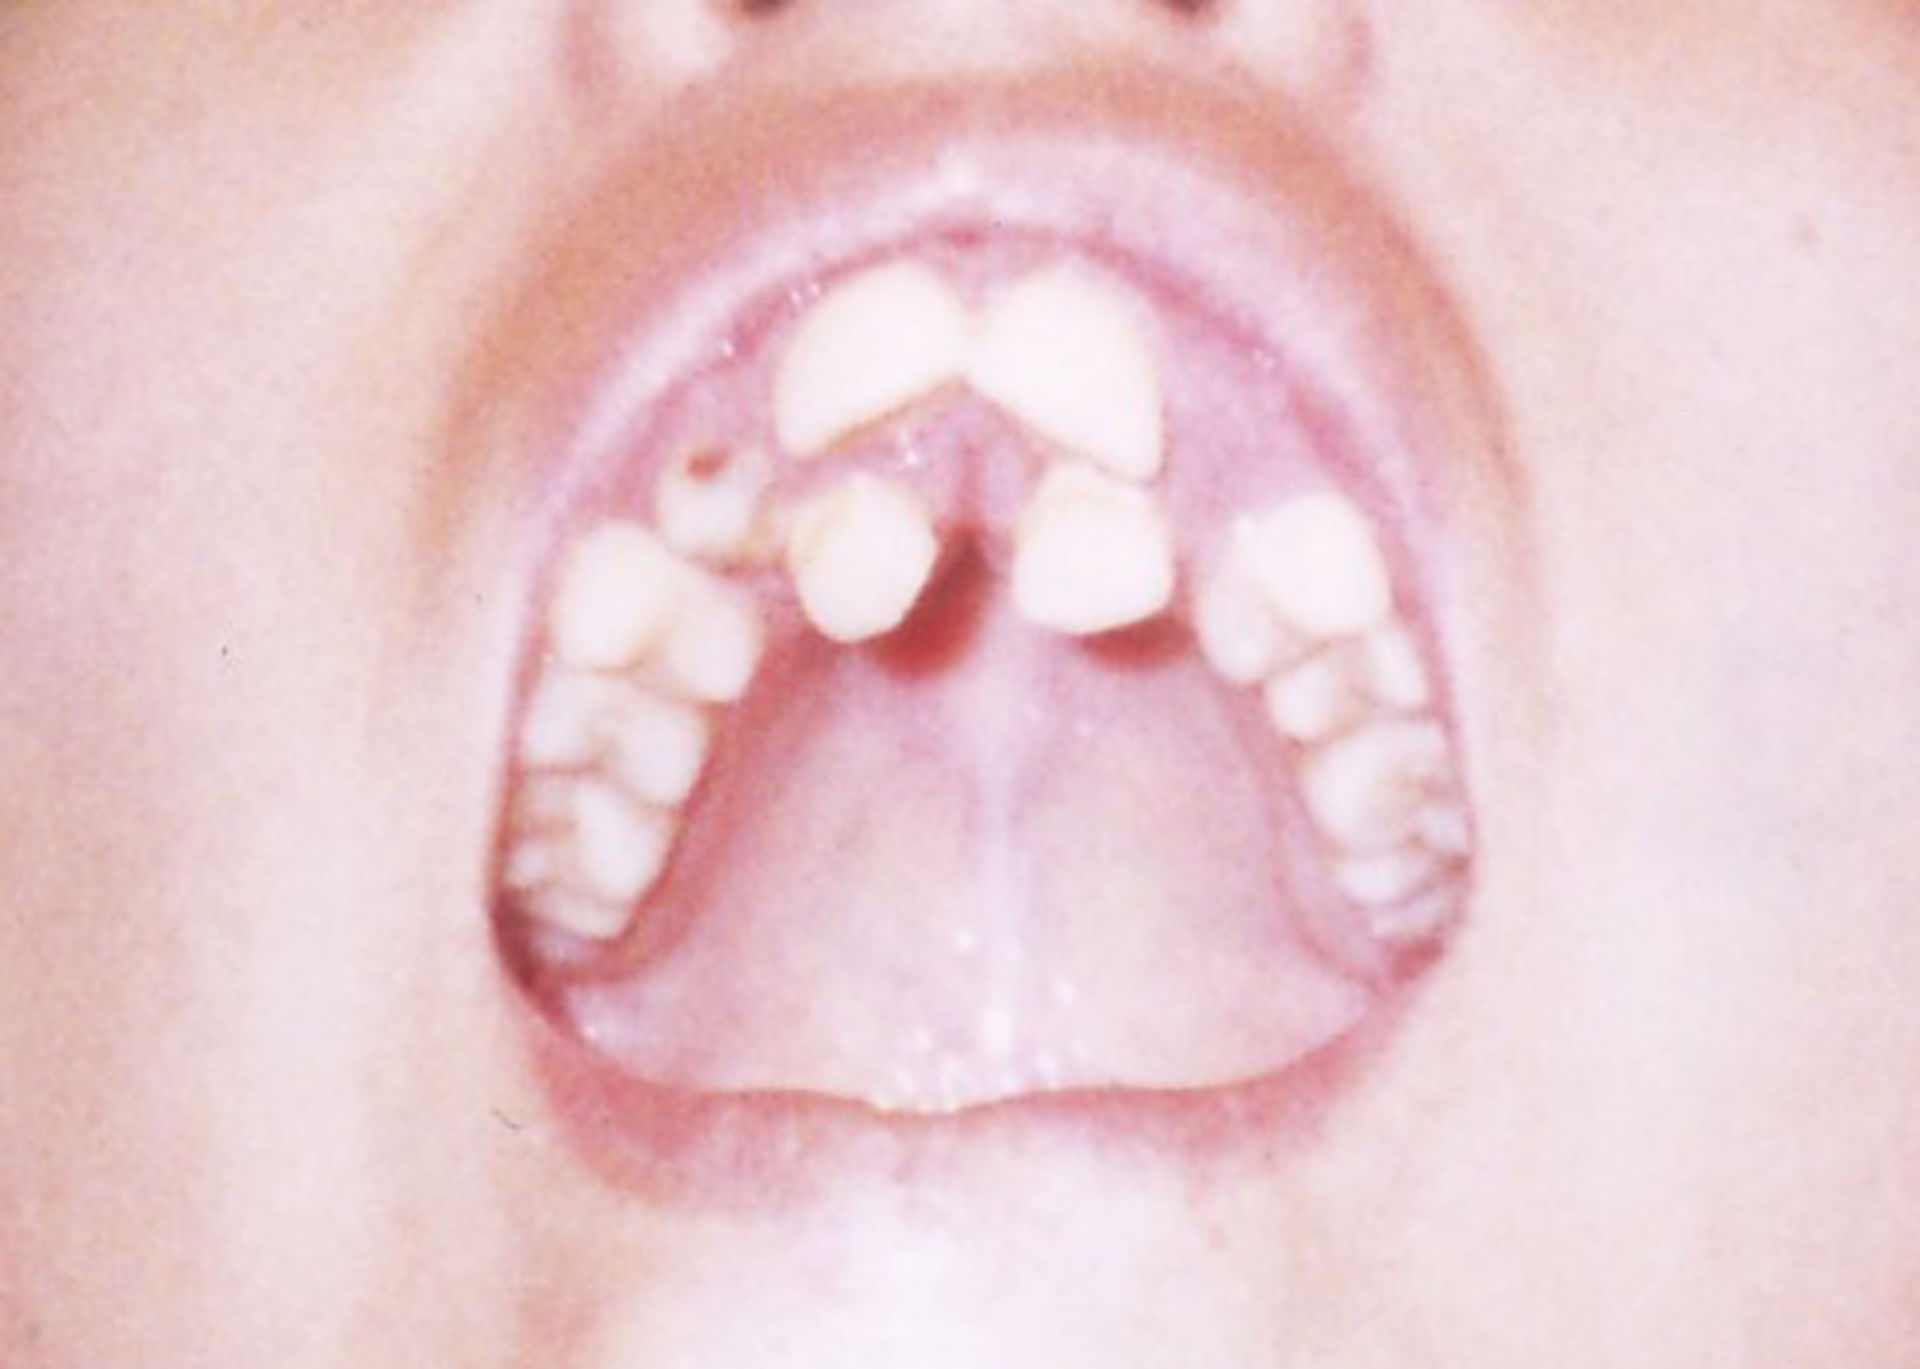 Frontal teeth deformity